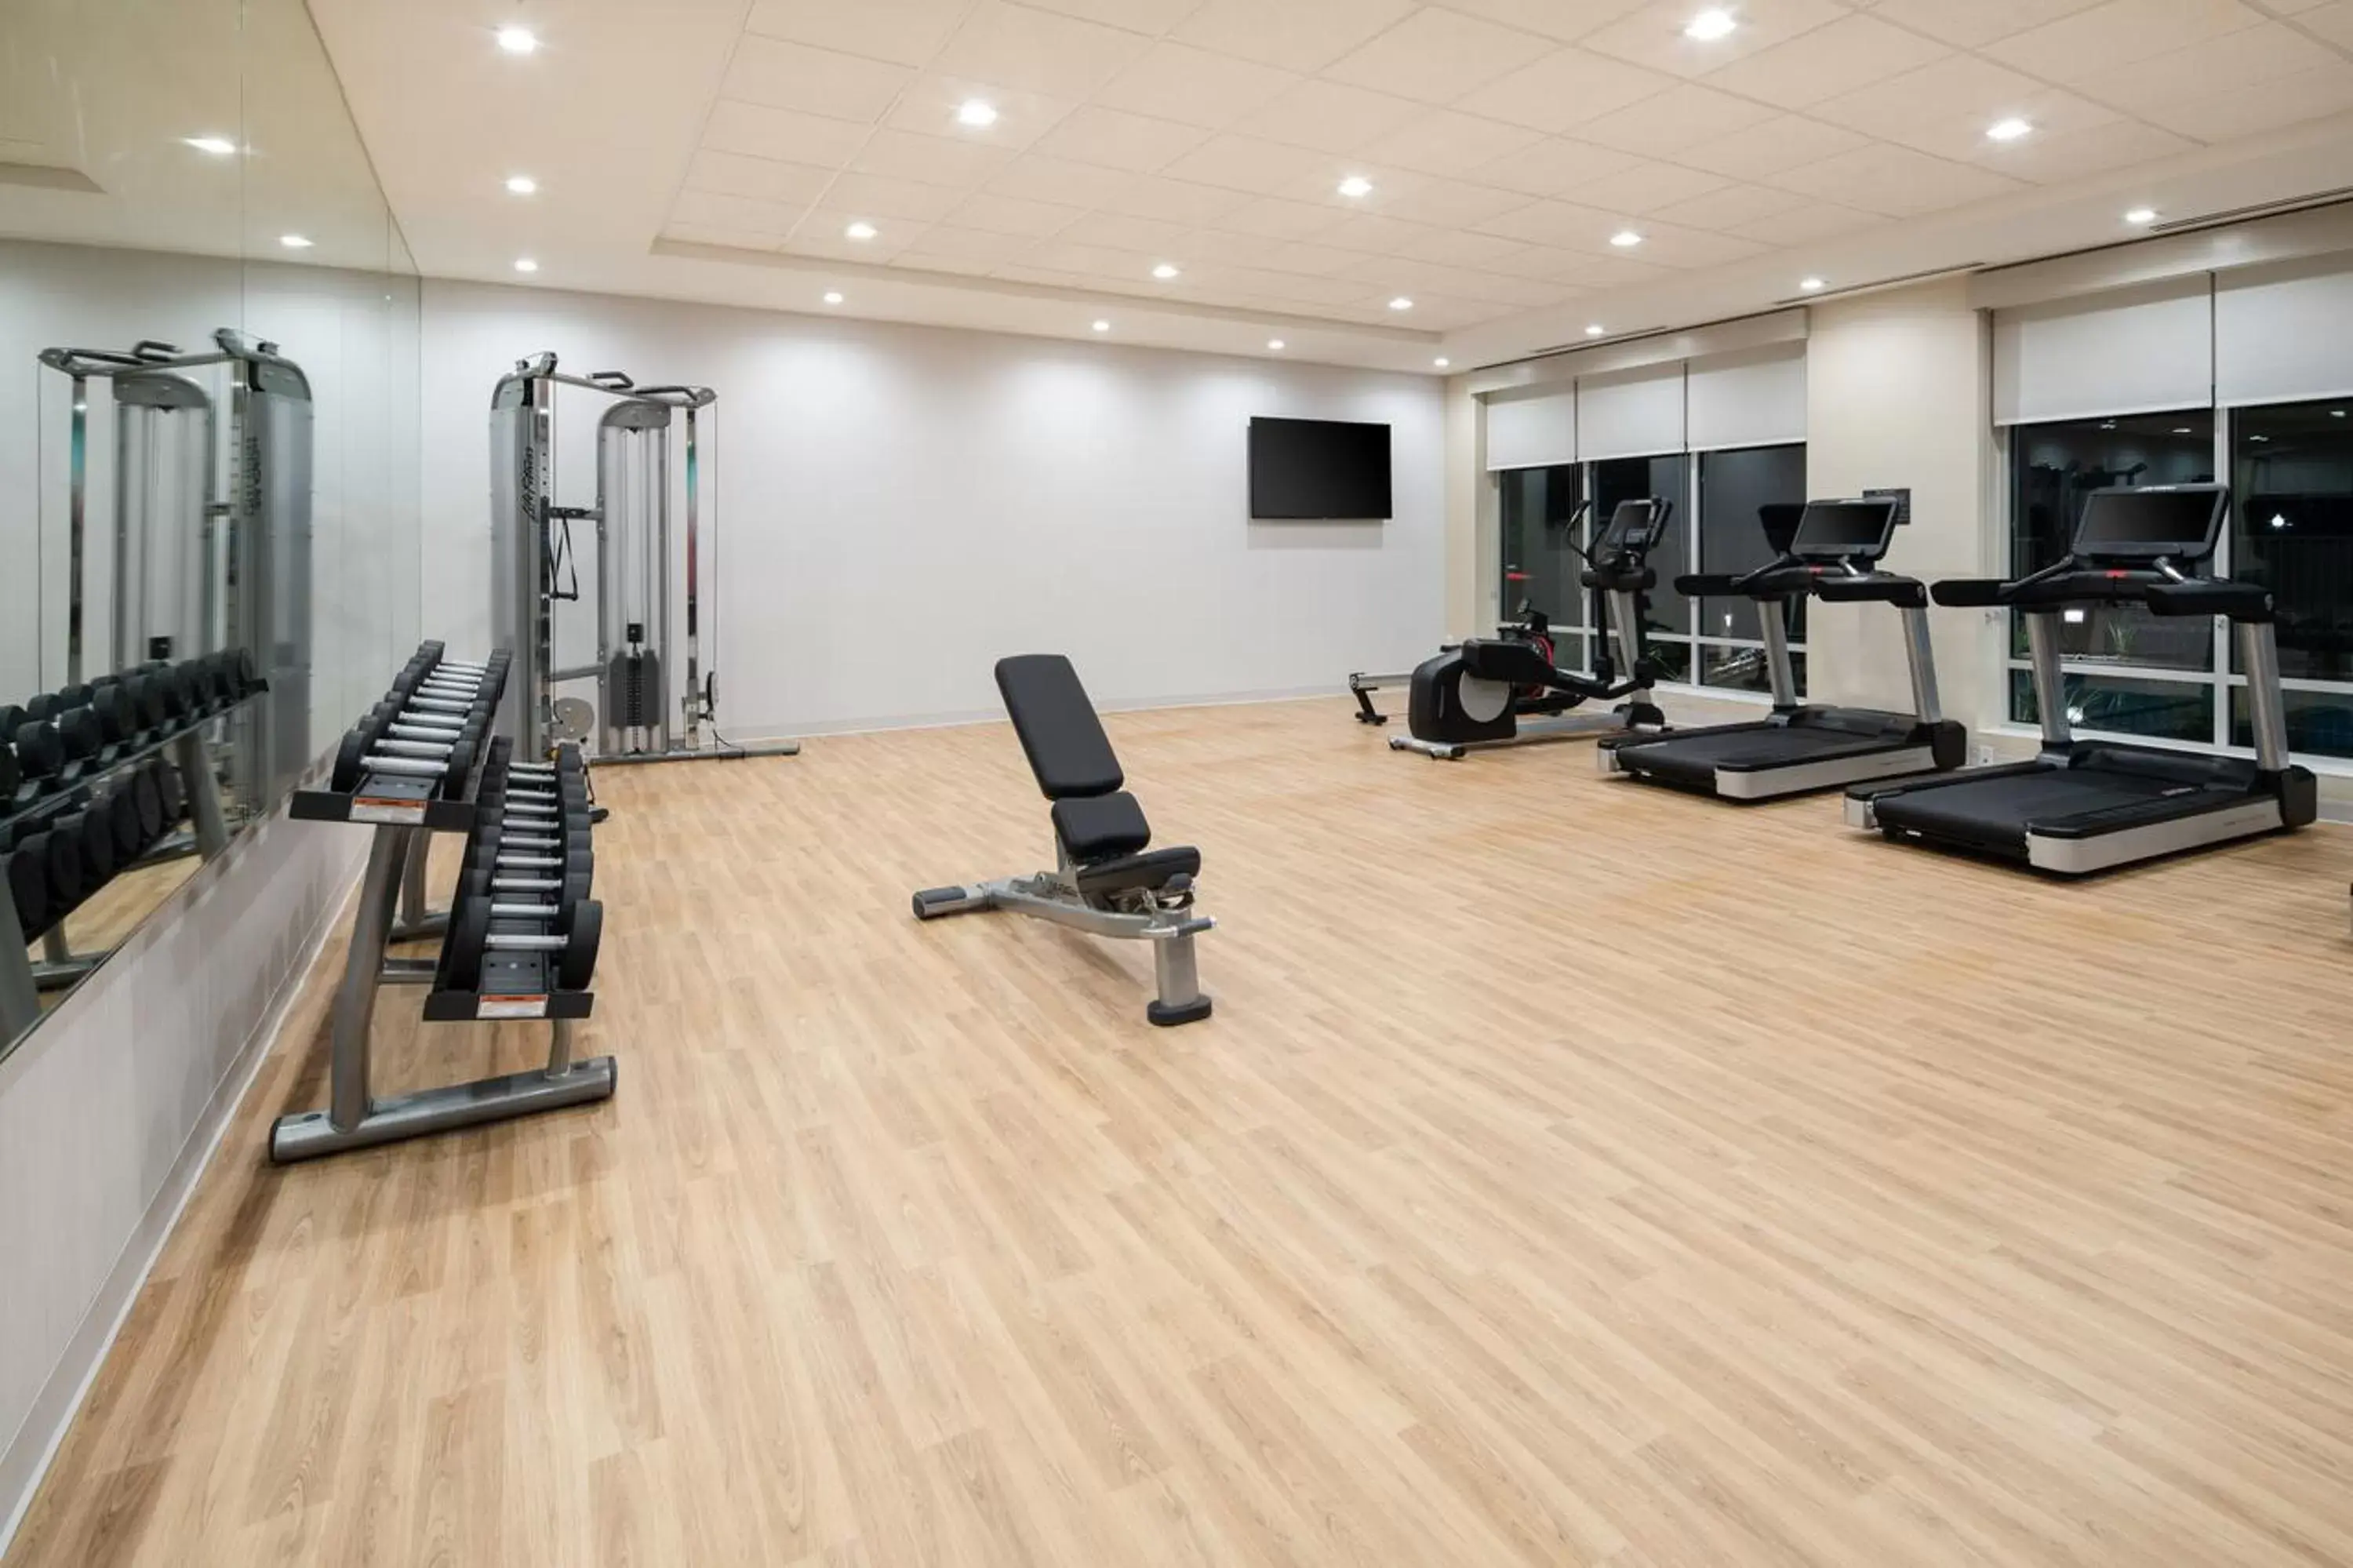 Fitness centre/facilities, Fitness Center/Facilities in Hyatt Place Bakersfield